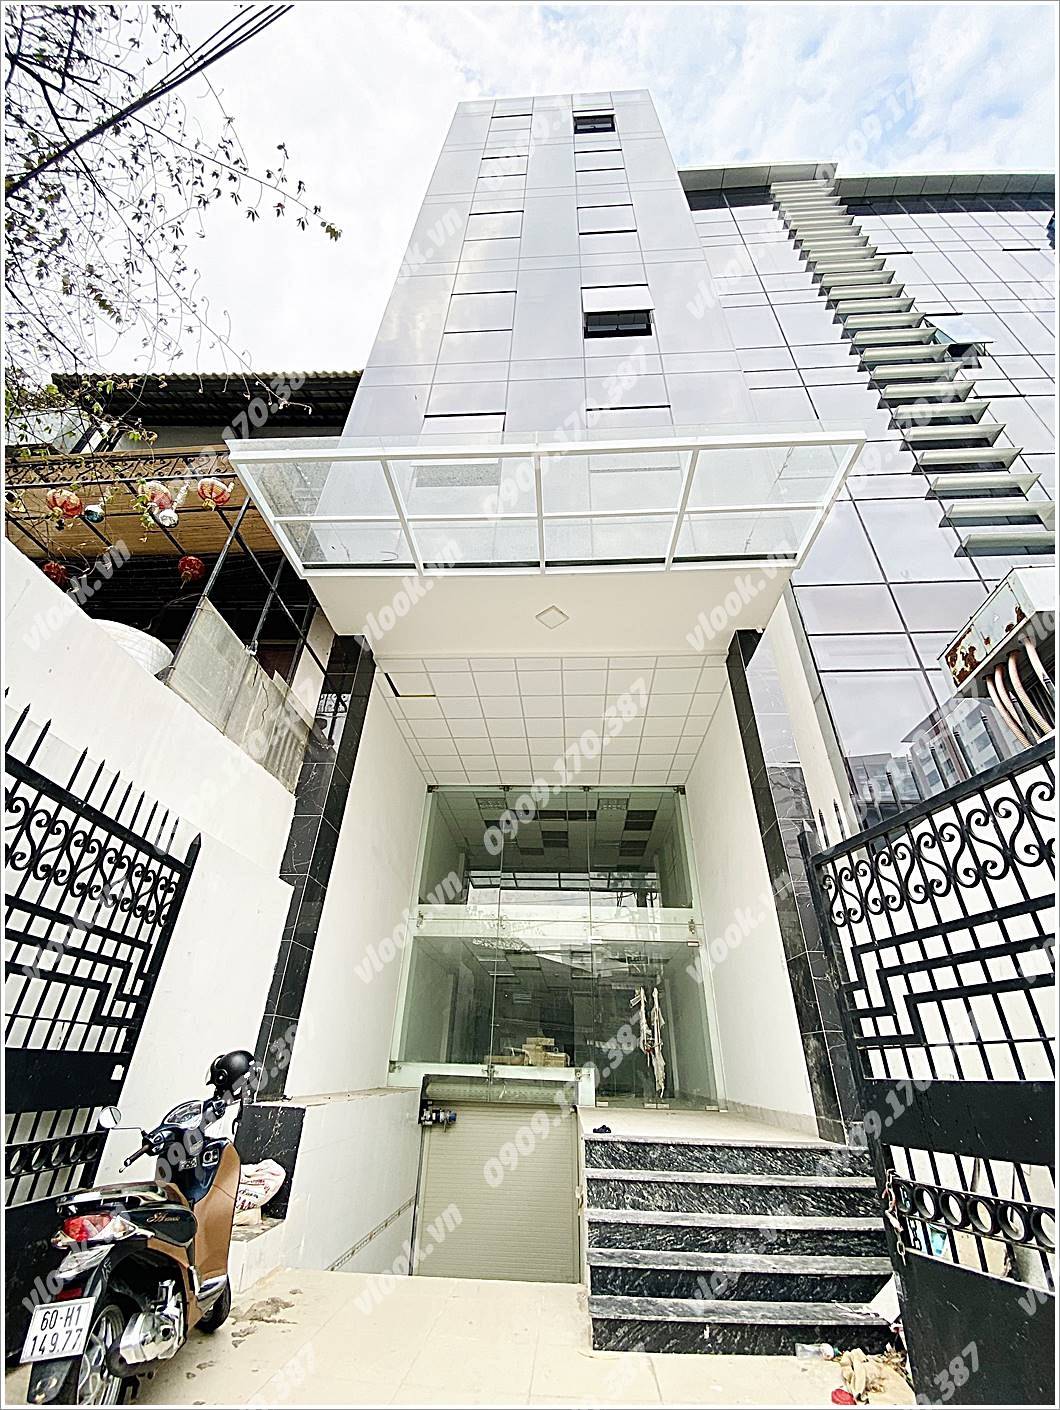 Cao ốc văn phòng cho thuê tòa nhà PLS Building Tân Cảng 2, Quận Bình Thạnh, TPHCM - vlook.vn